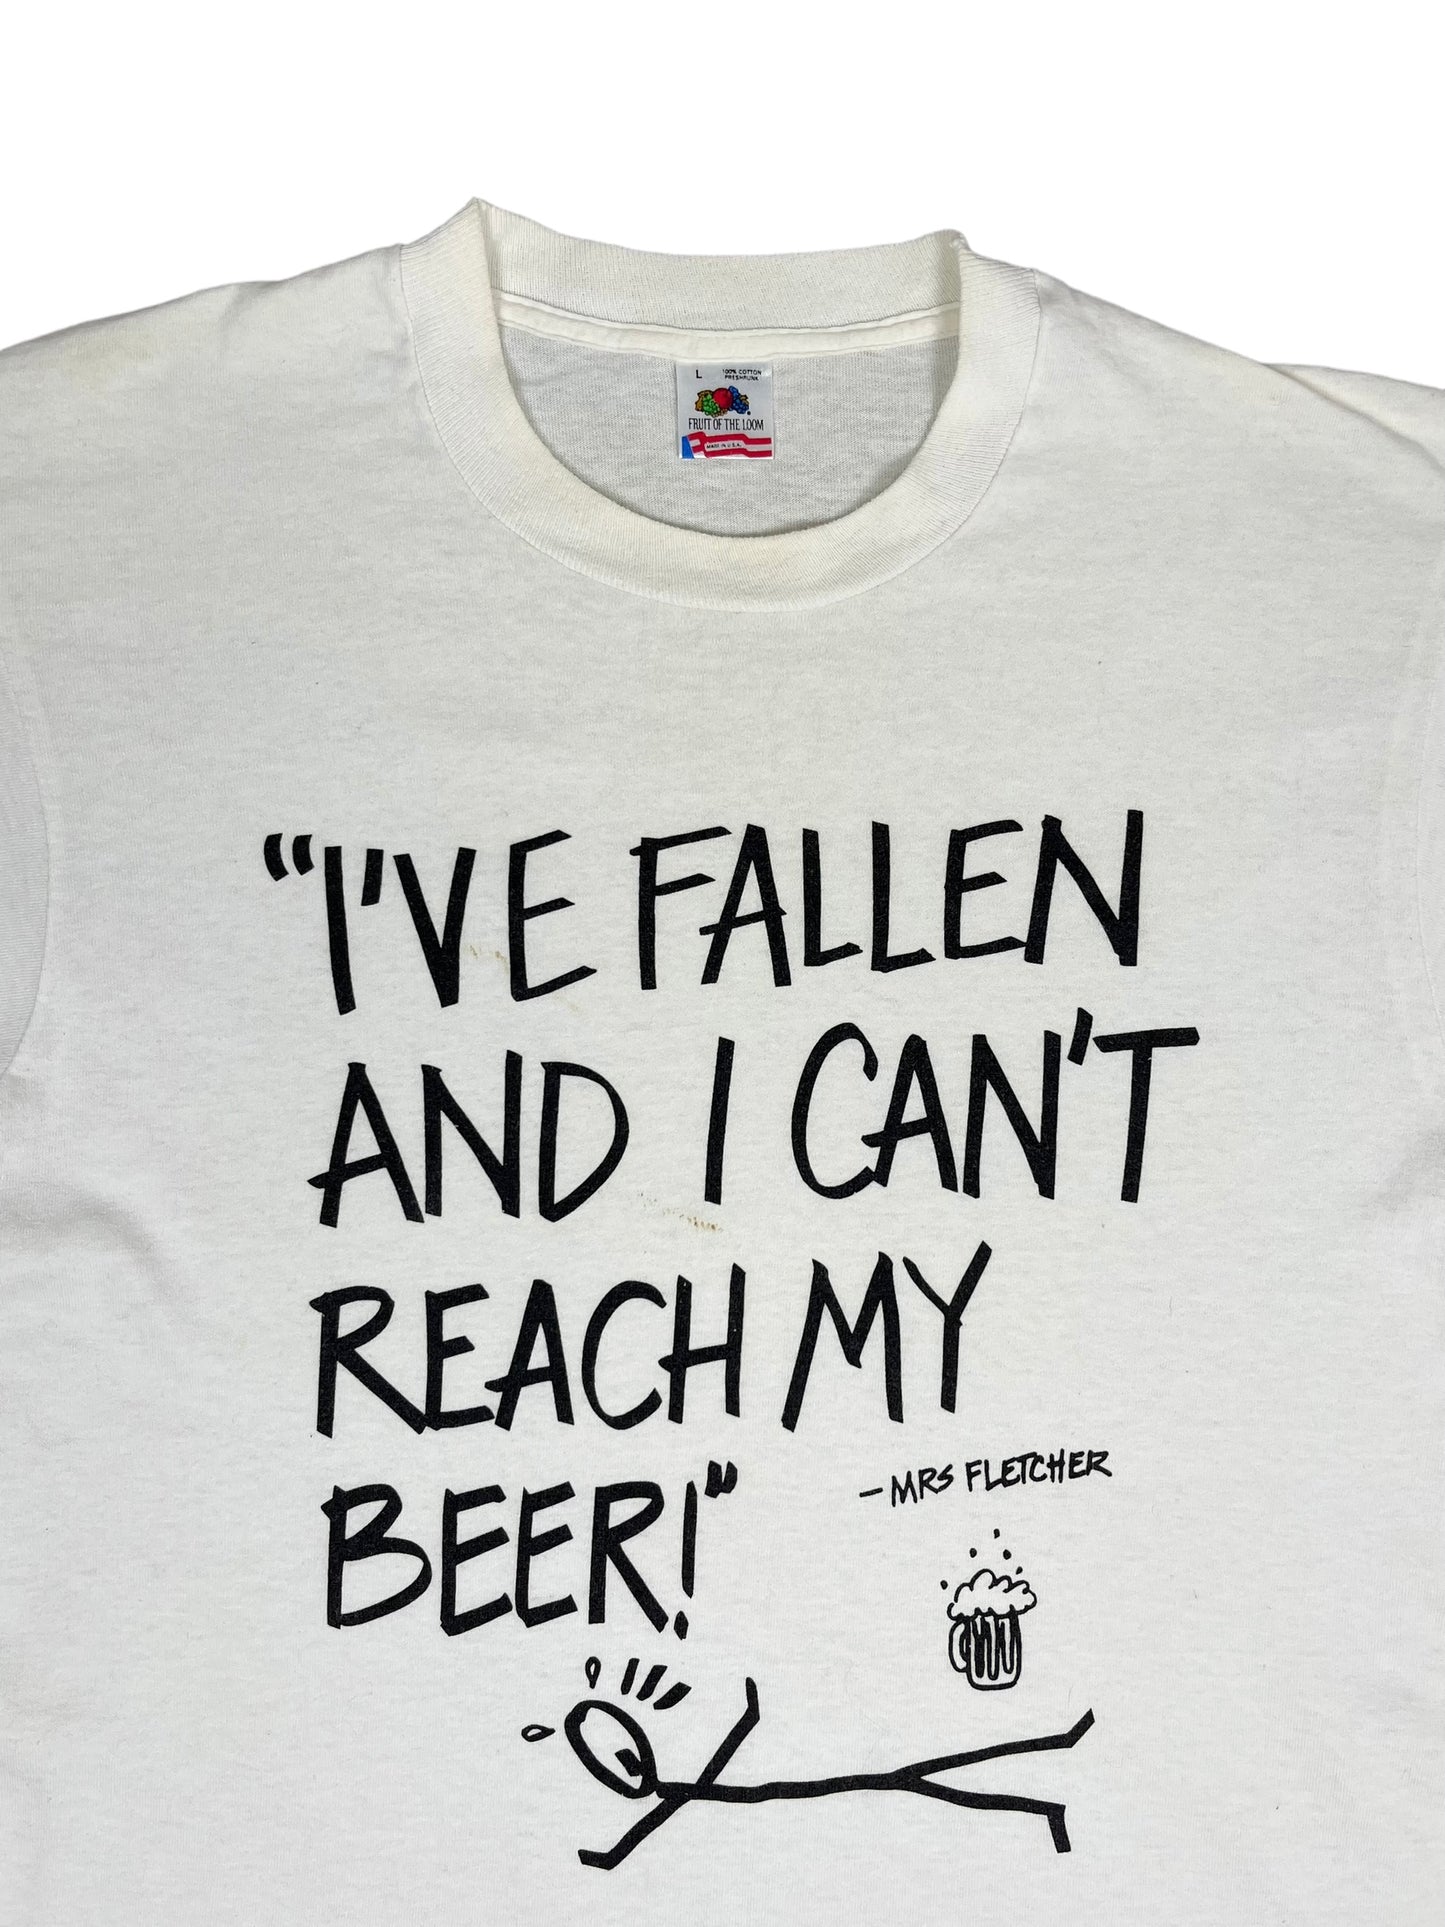 Vintage 90’s Beer T Shirt - Large